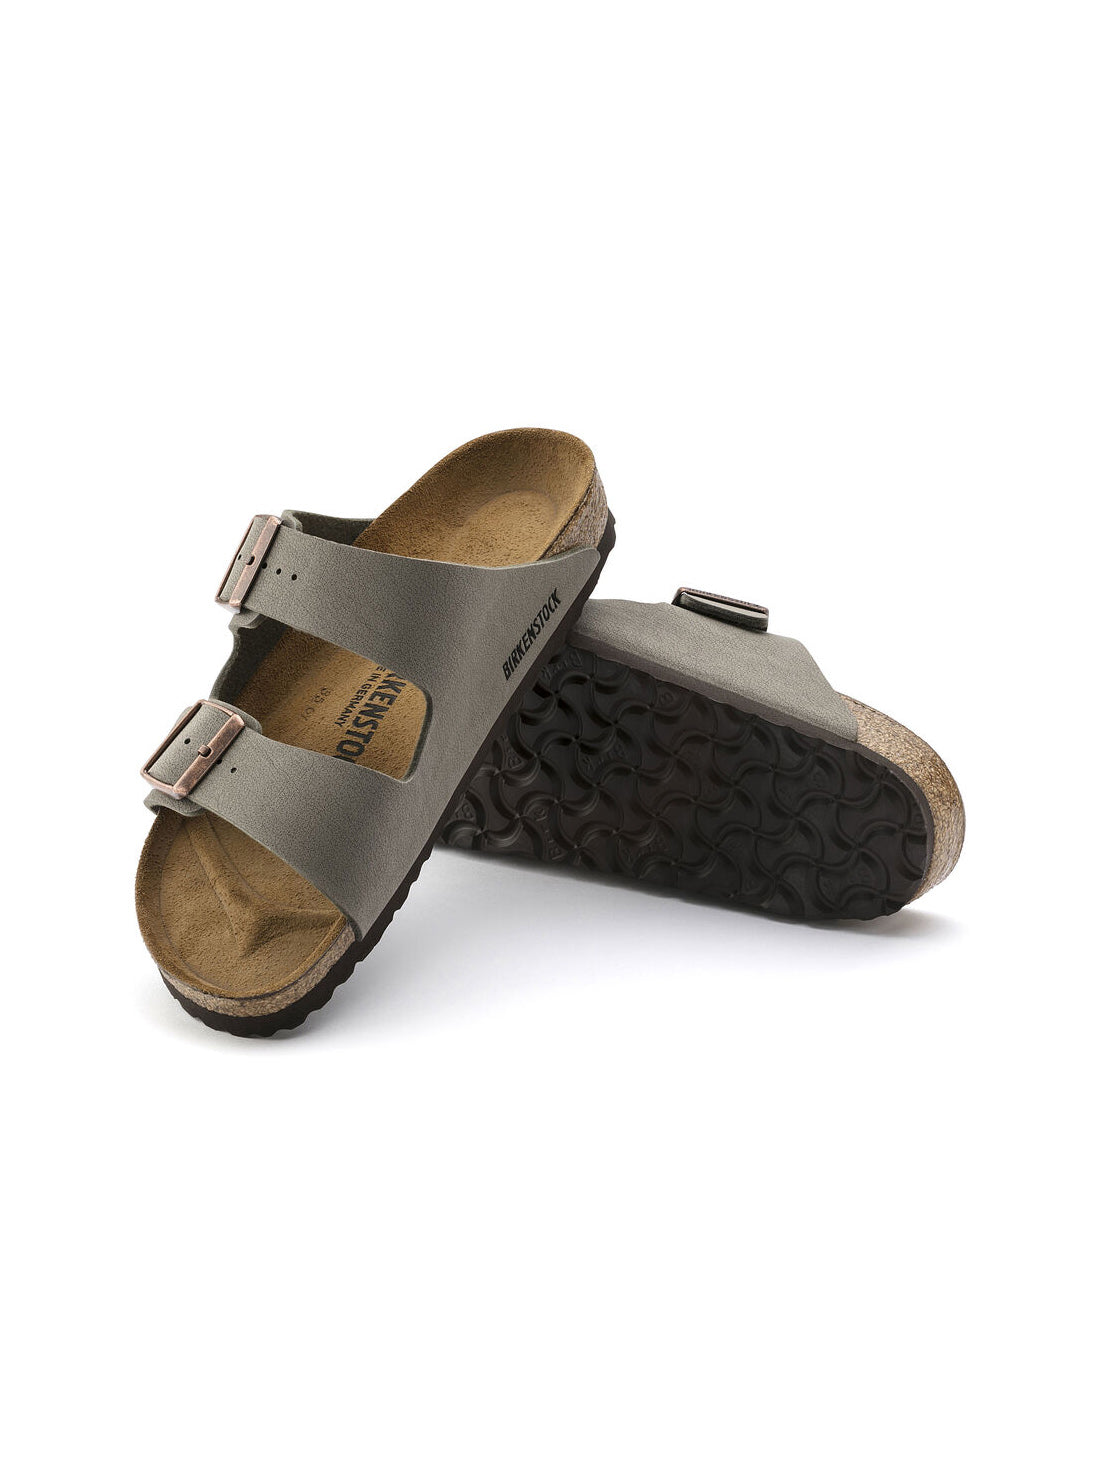 birkenstock arizona sandal in birkibuc stone regular